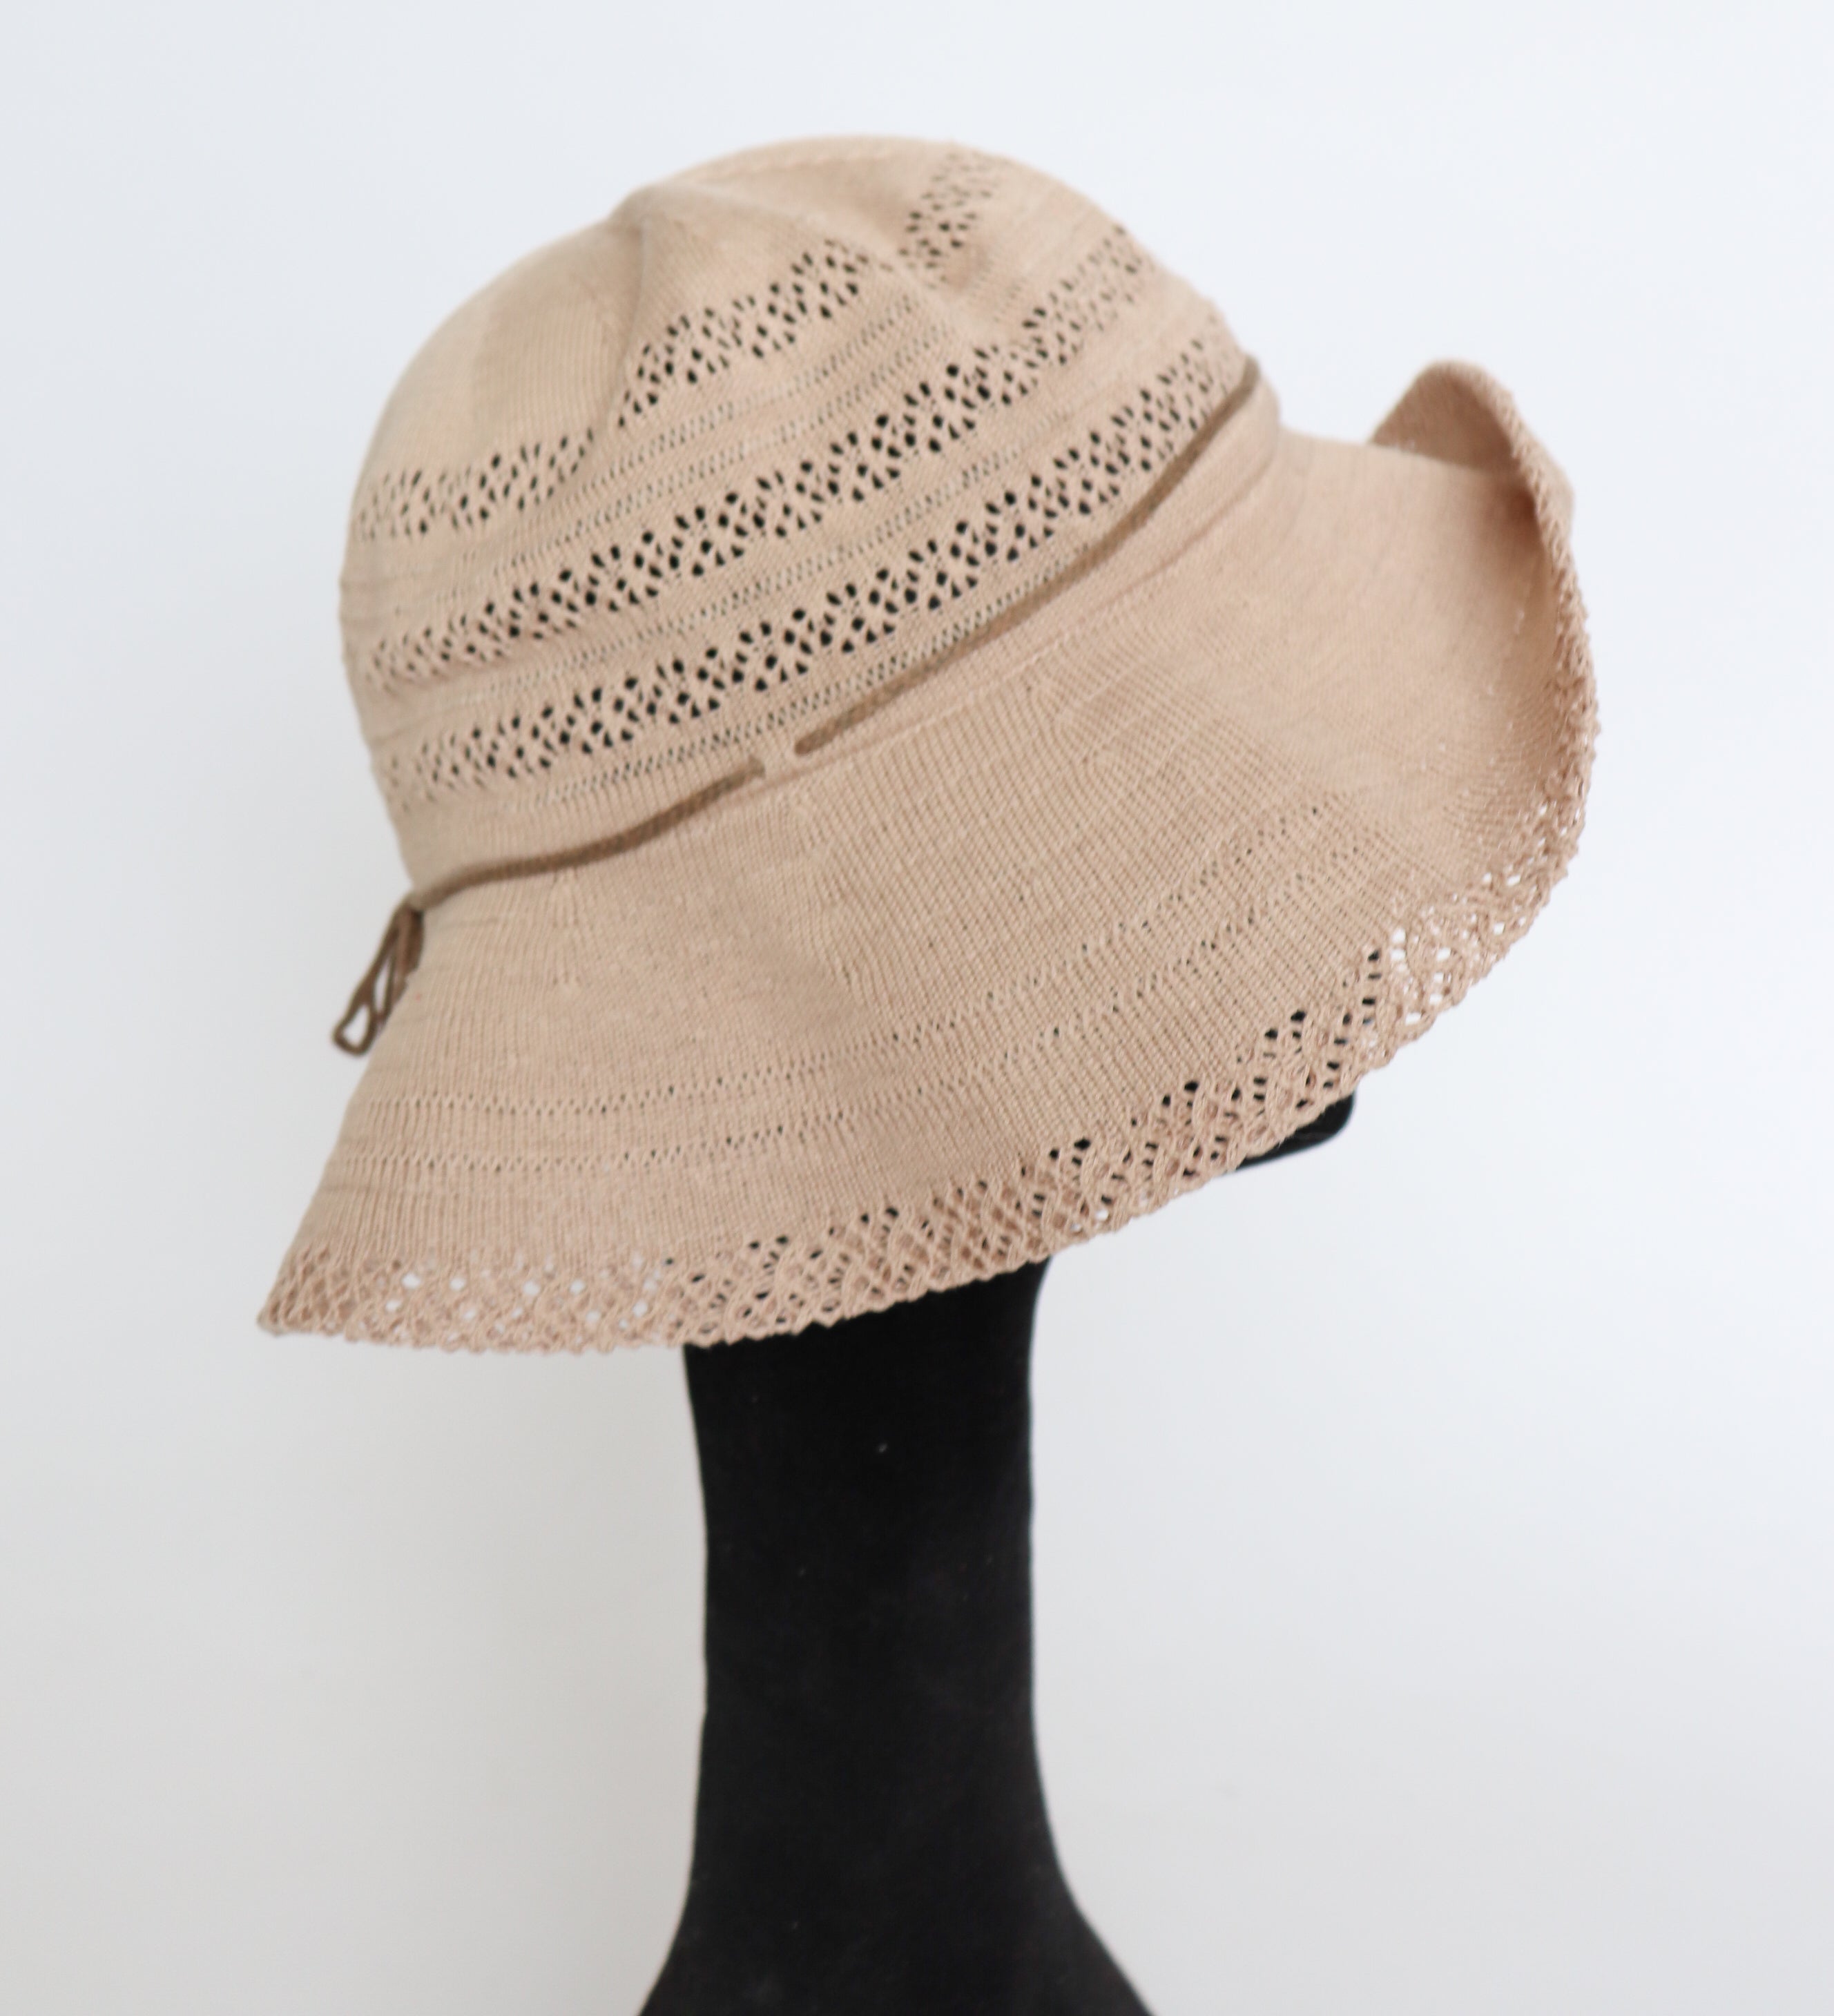 Pierre Cardin Foldable Vintage Sun Hat - Beige - Bucket / Cloche - M / L